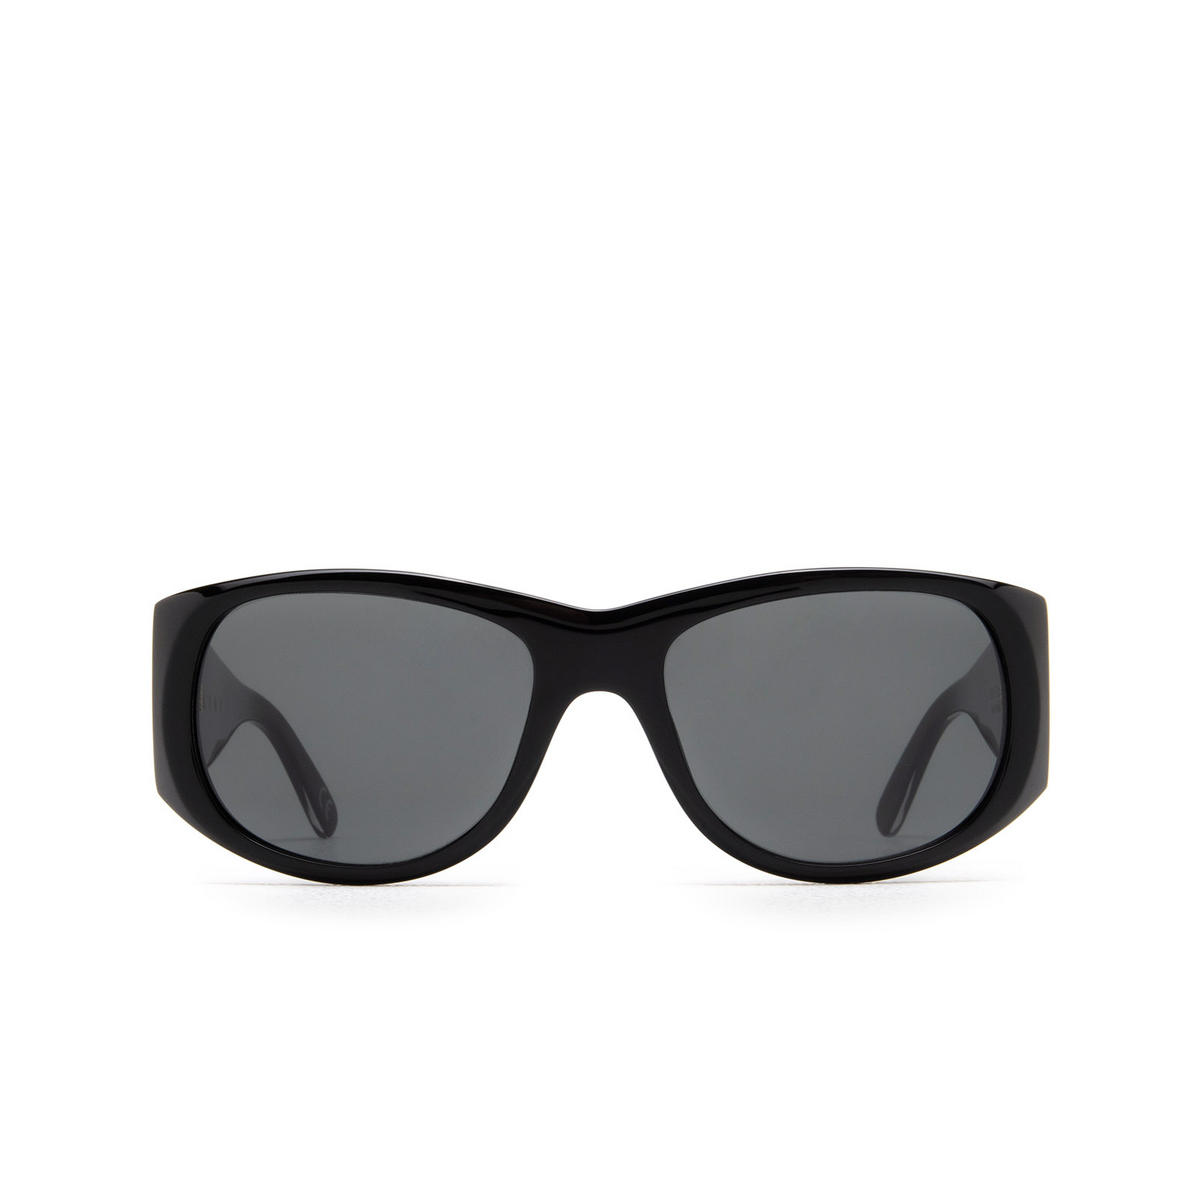 Marni ORINOCO RIVER Sunglasses Q8D Black - front view